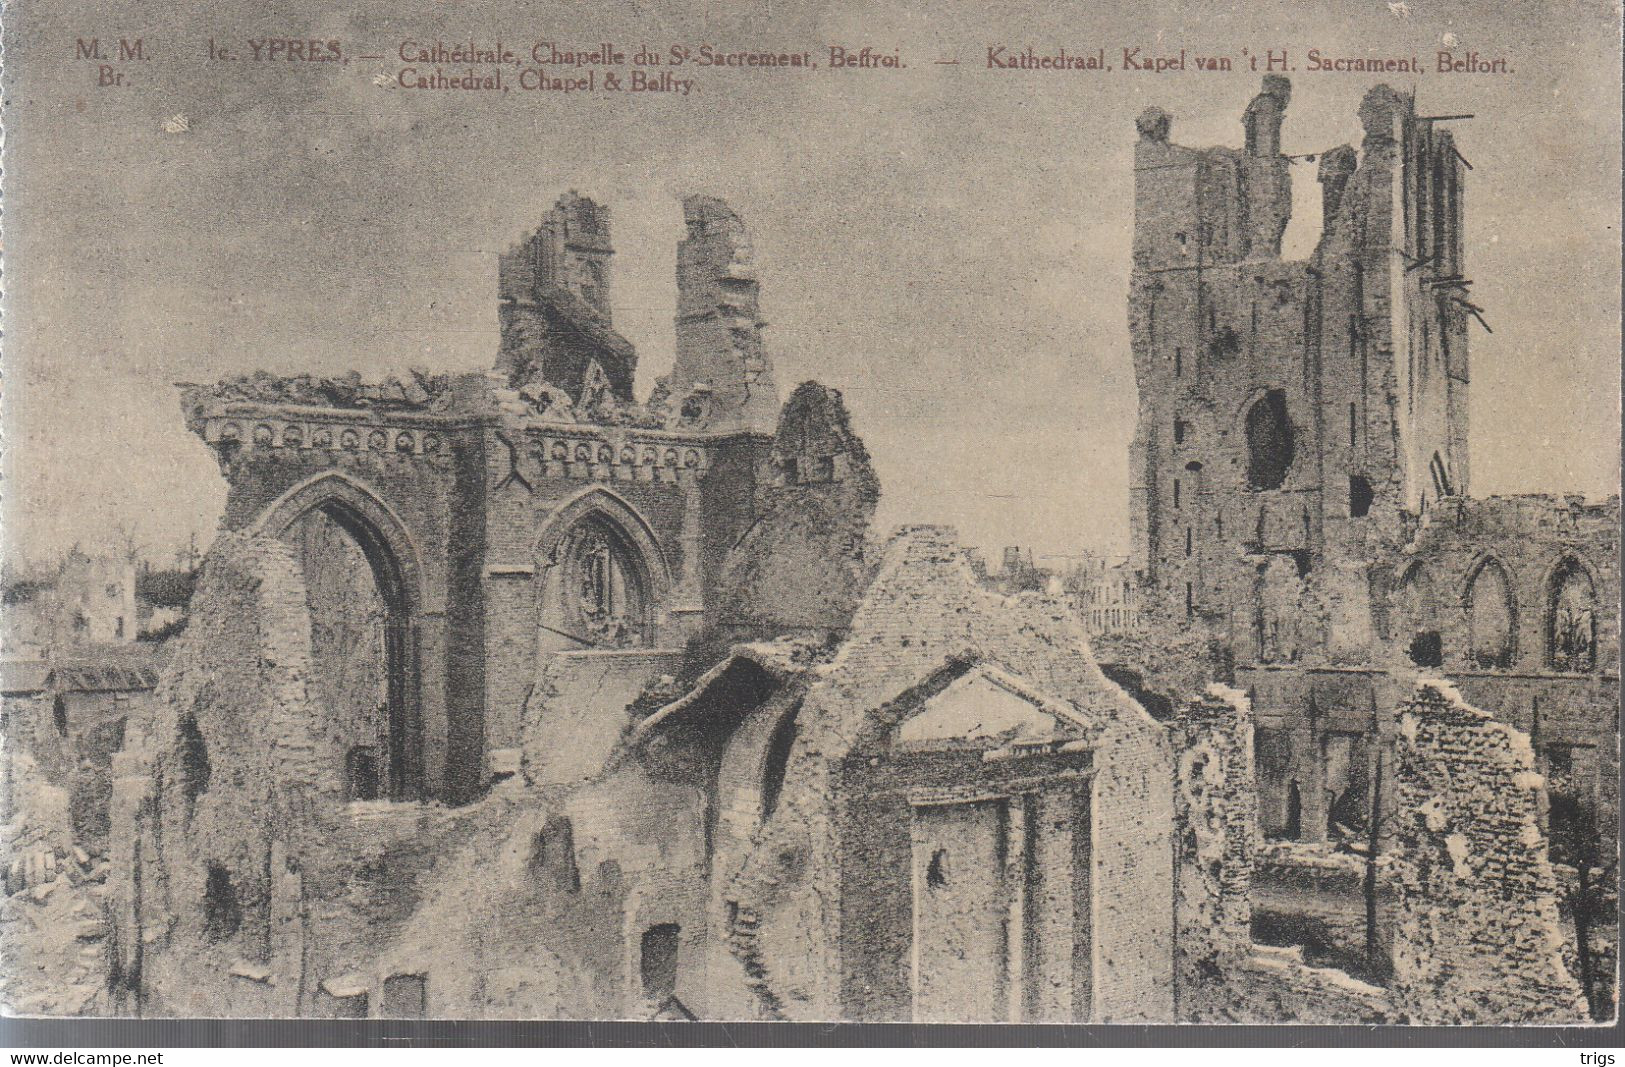 Ypres - Kathedraal, Kapel Van 't H. Sacrement & Belfort - Ieper